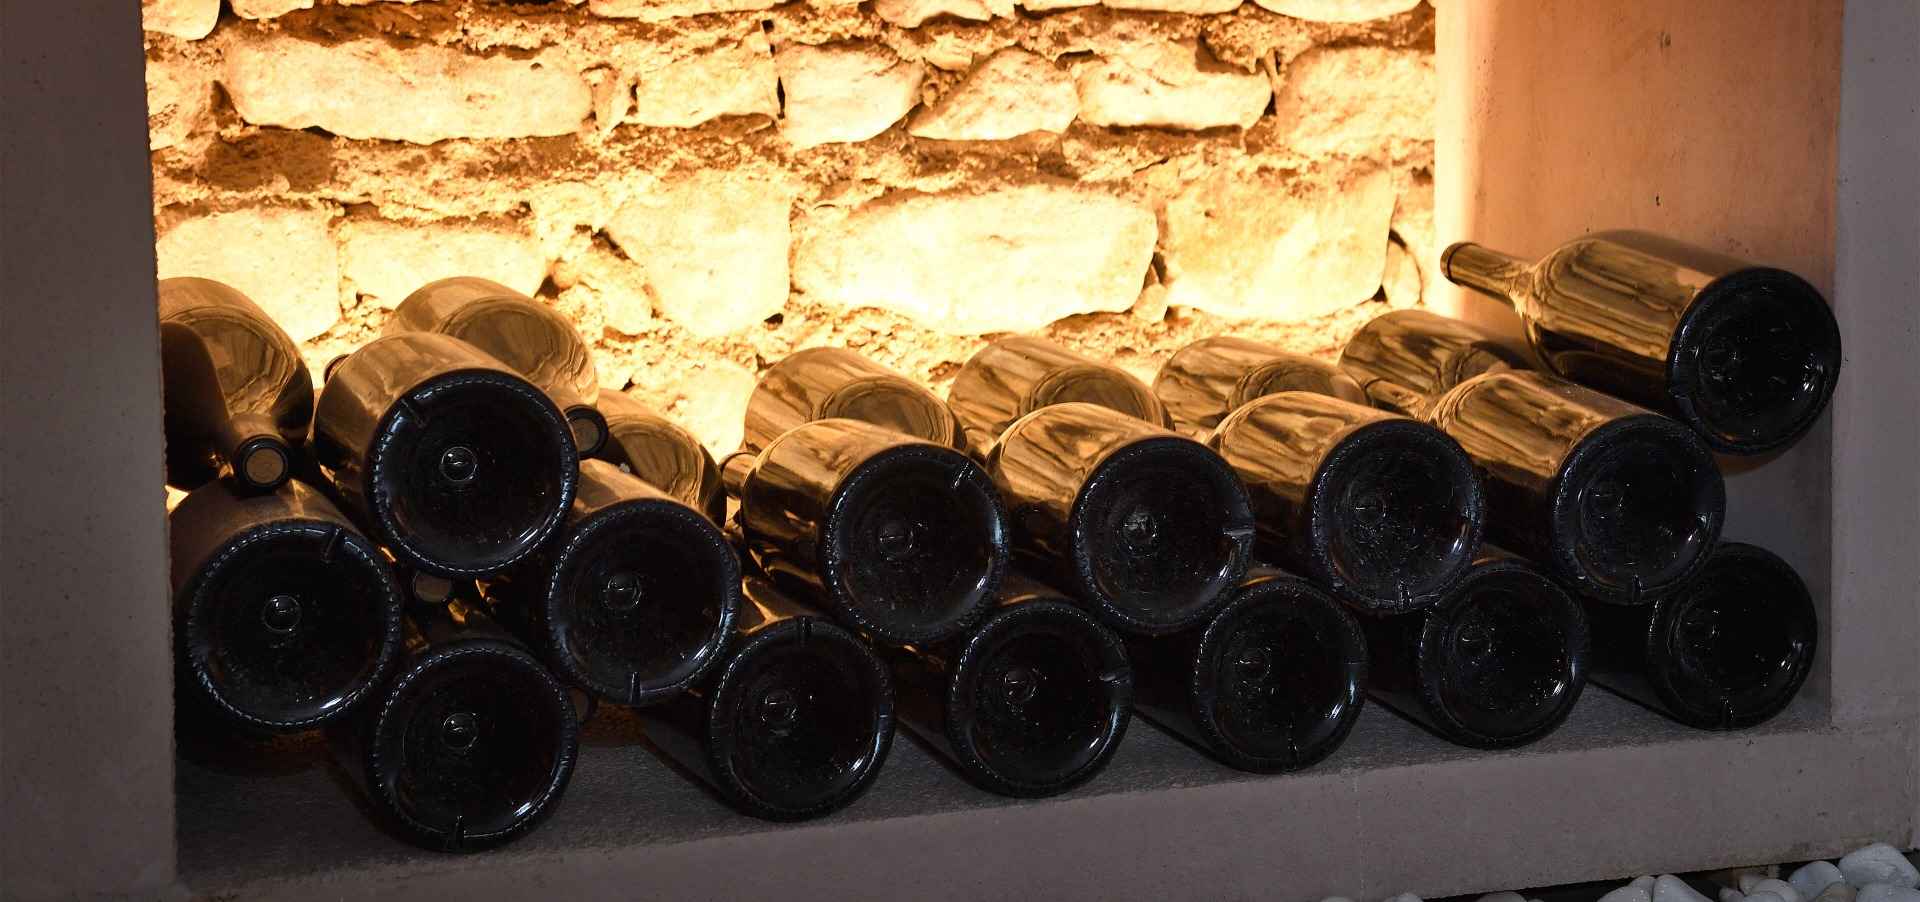 Domaine de Vernus - Exceptional wines in Beaujolais